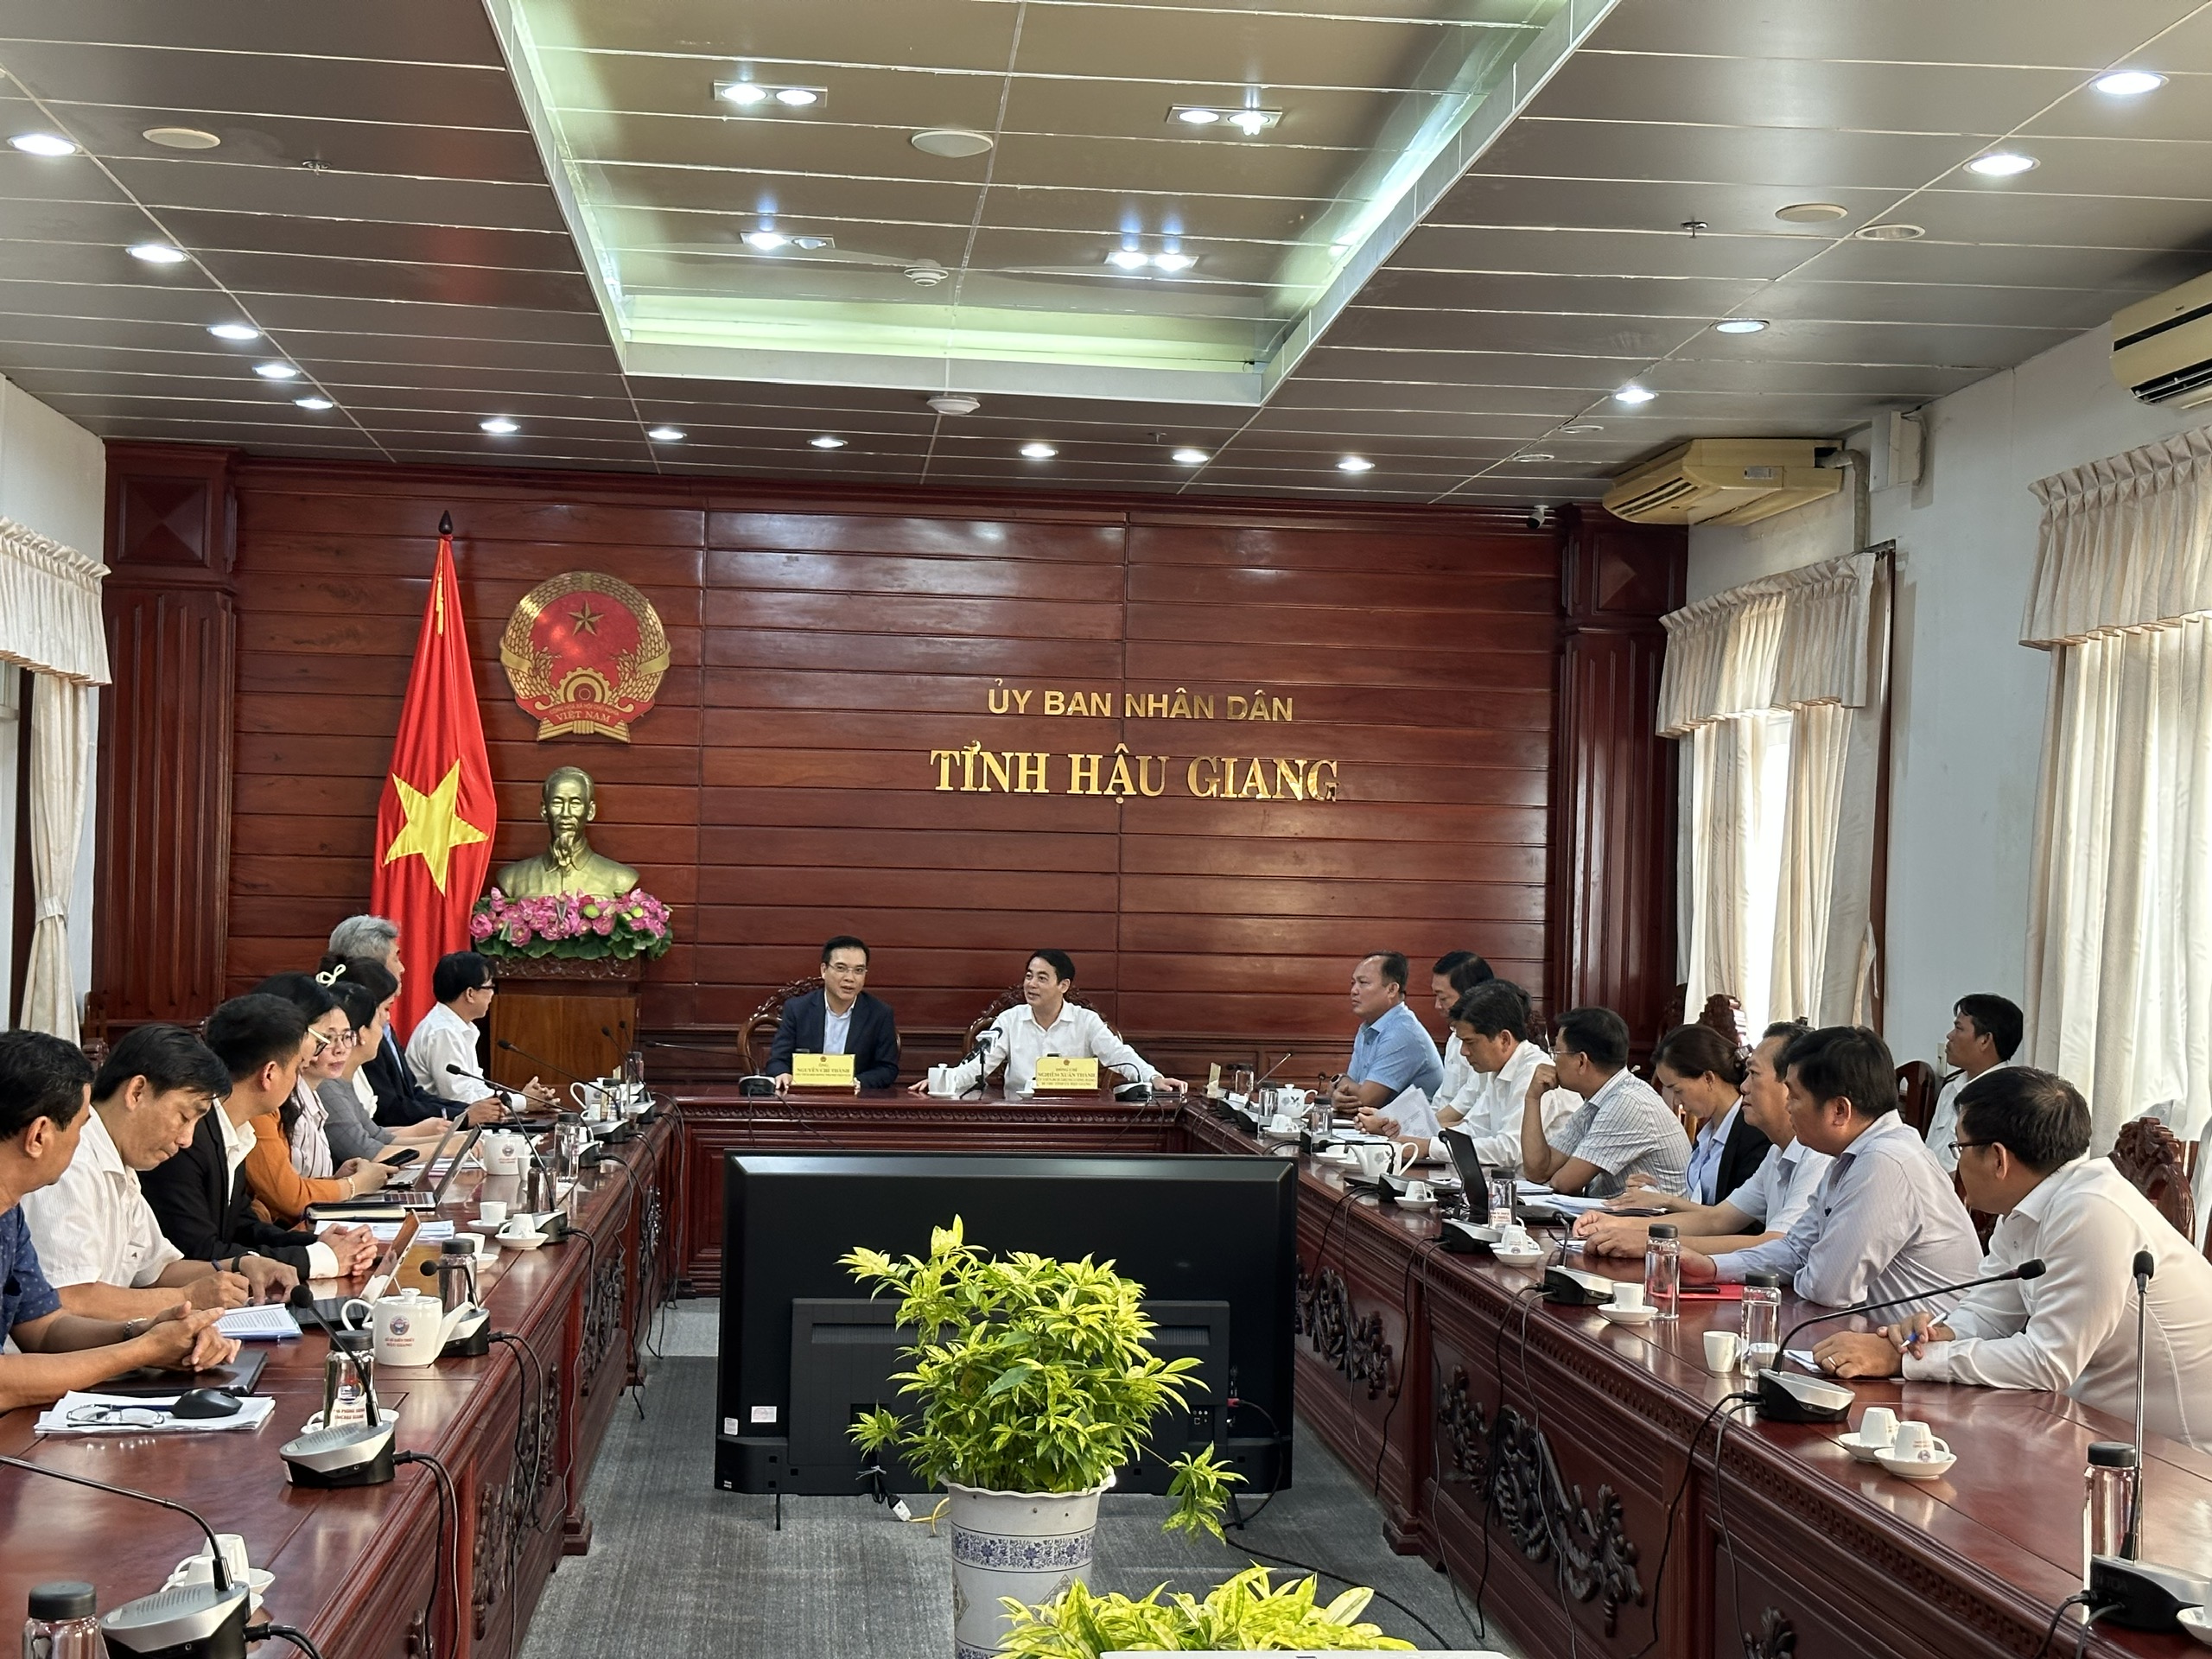 Bí thư Đảng uỷ, Chủ tịch HĐTV SCIC Nguyễn Chí Thành đến thăm và làm việc với Uỷ ban Nhân dân tỉnh Hậu Giang